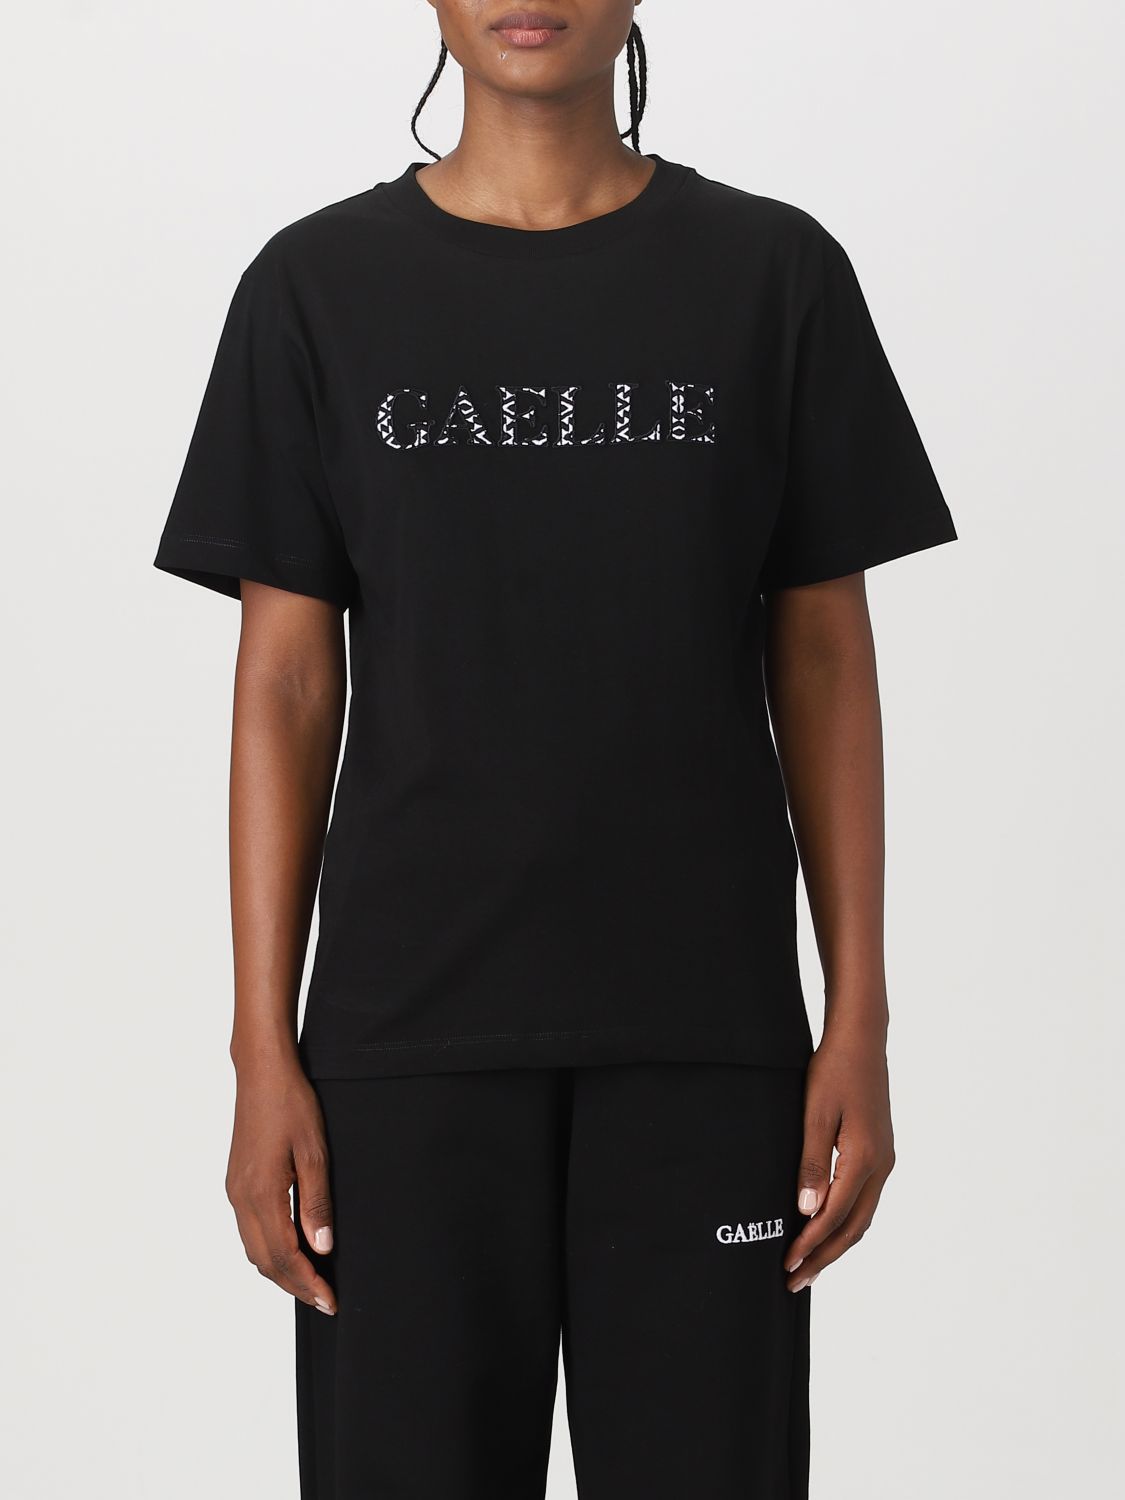 Gaëlle Paris T-Shirt GAËLLE PARIS Woman colour Black